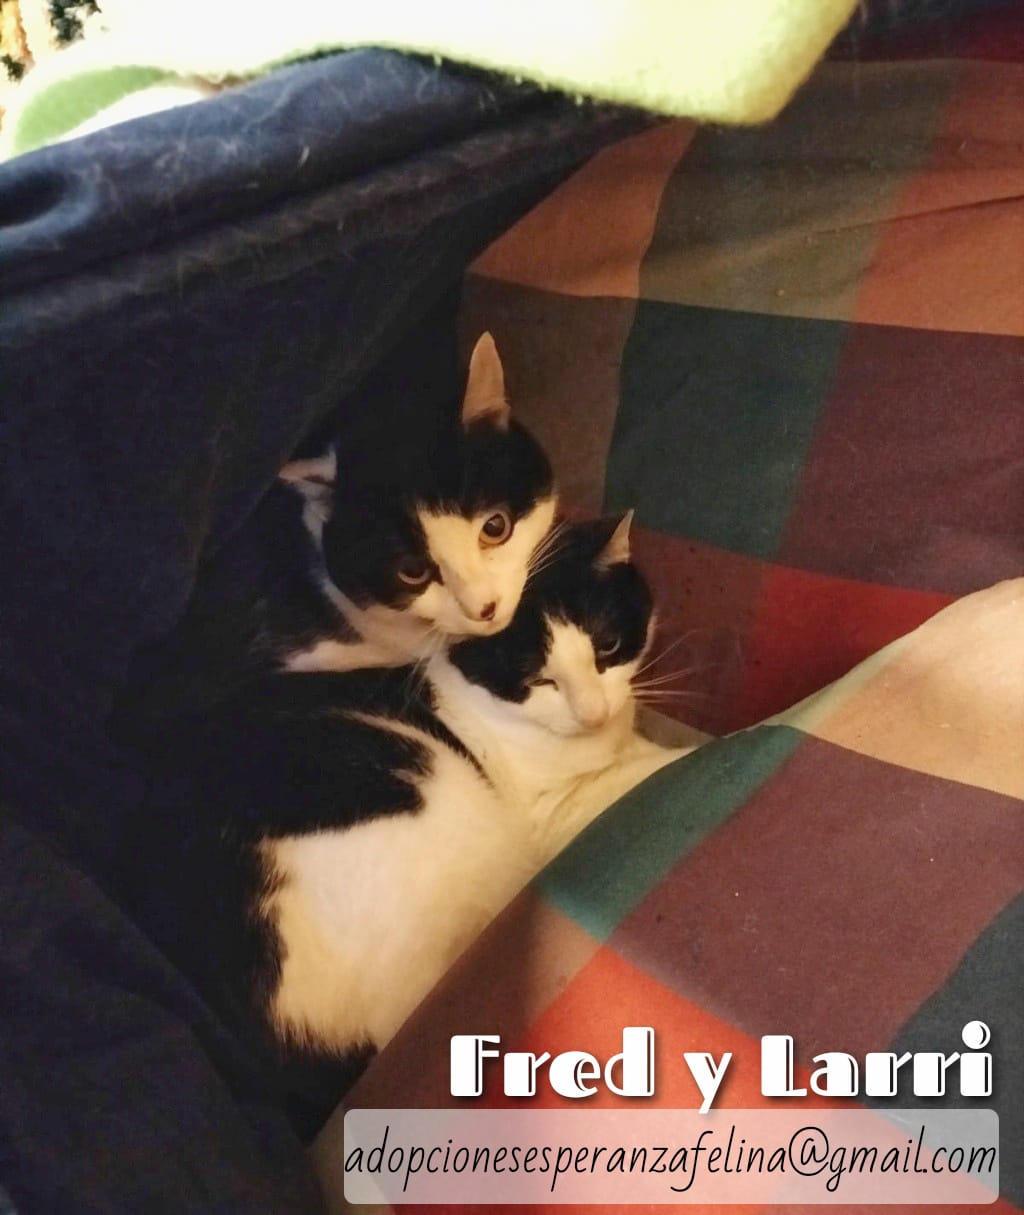 Fred y Larri, hermanitos en adopción (Álava-España f.n.aprox 09/03/15)  - Página 2 Whats185